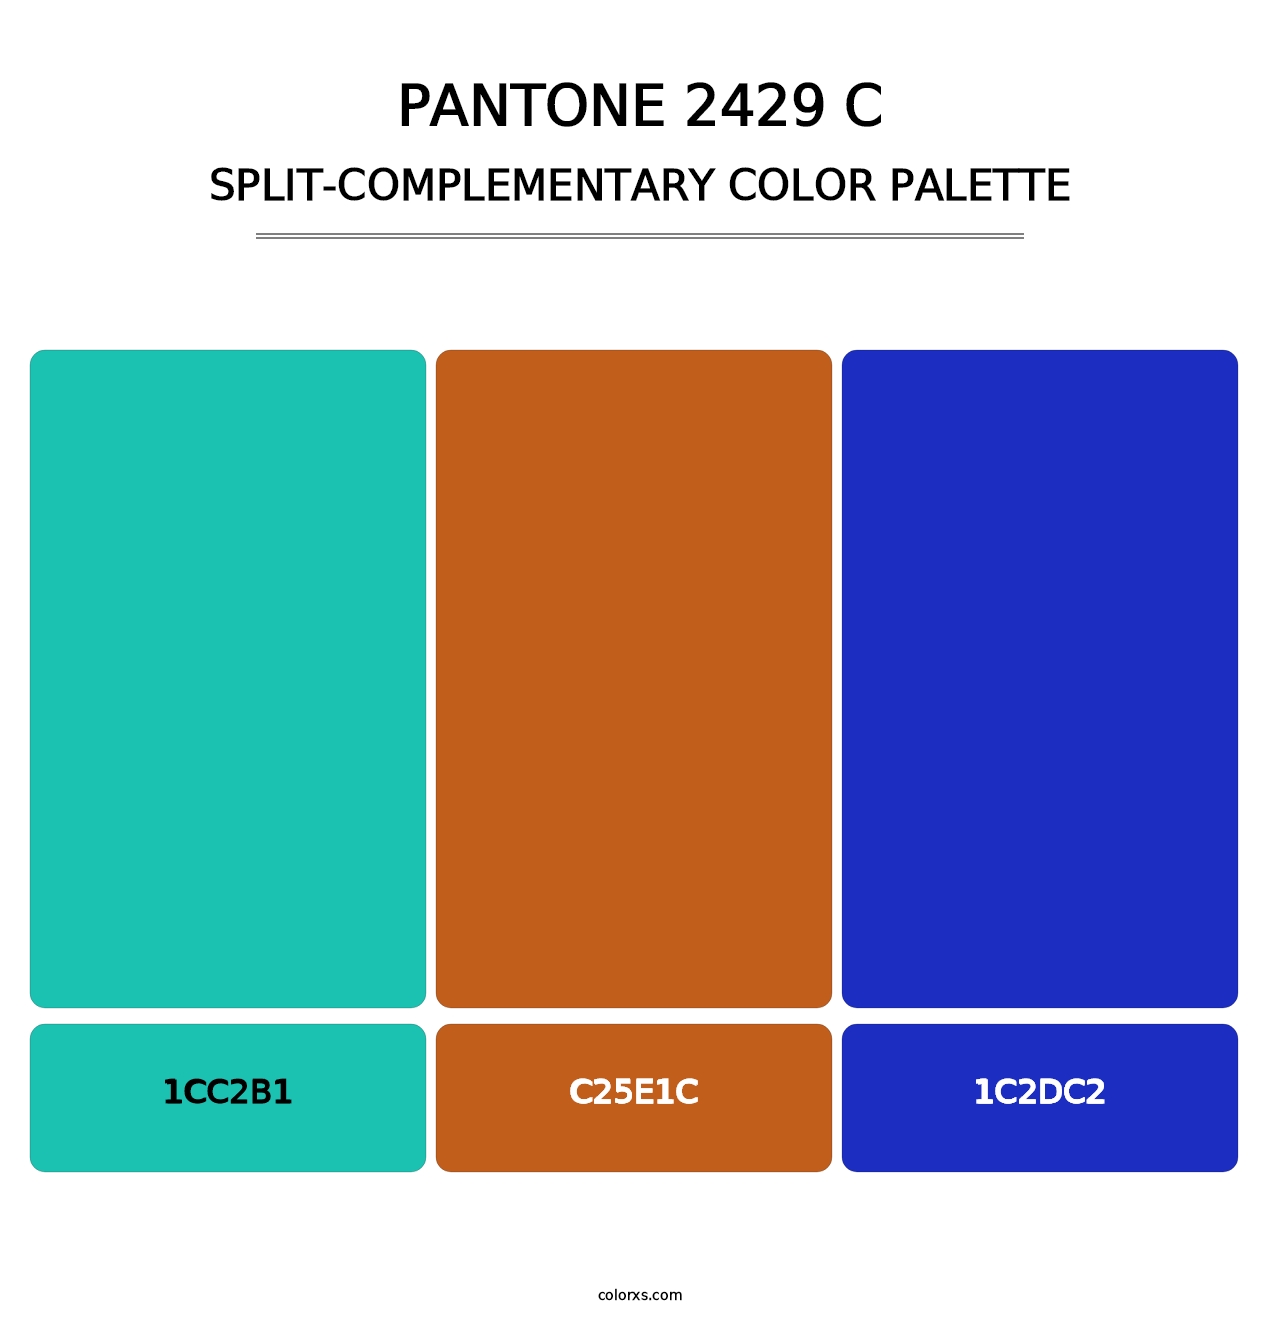 PANTONE 2429 C - Split-Complementary Color Palette